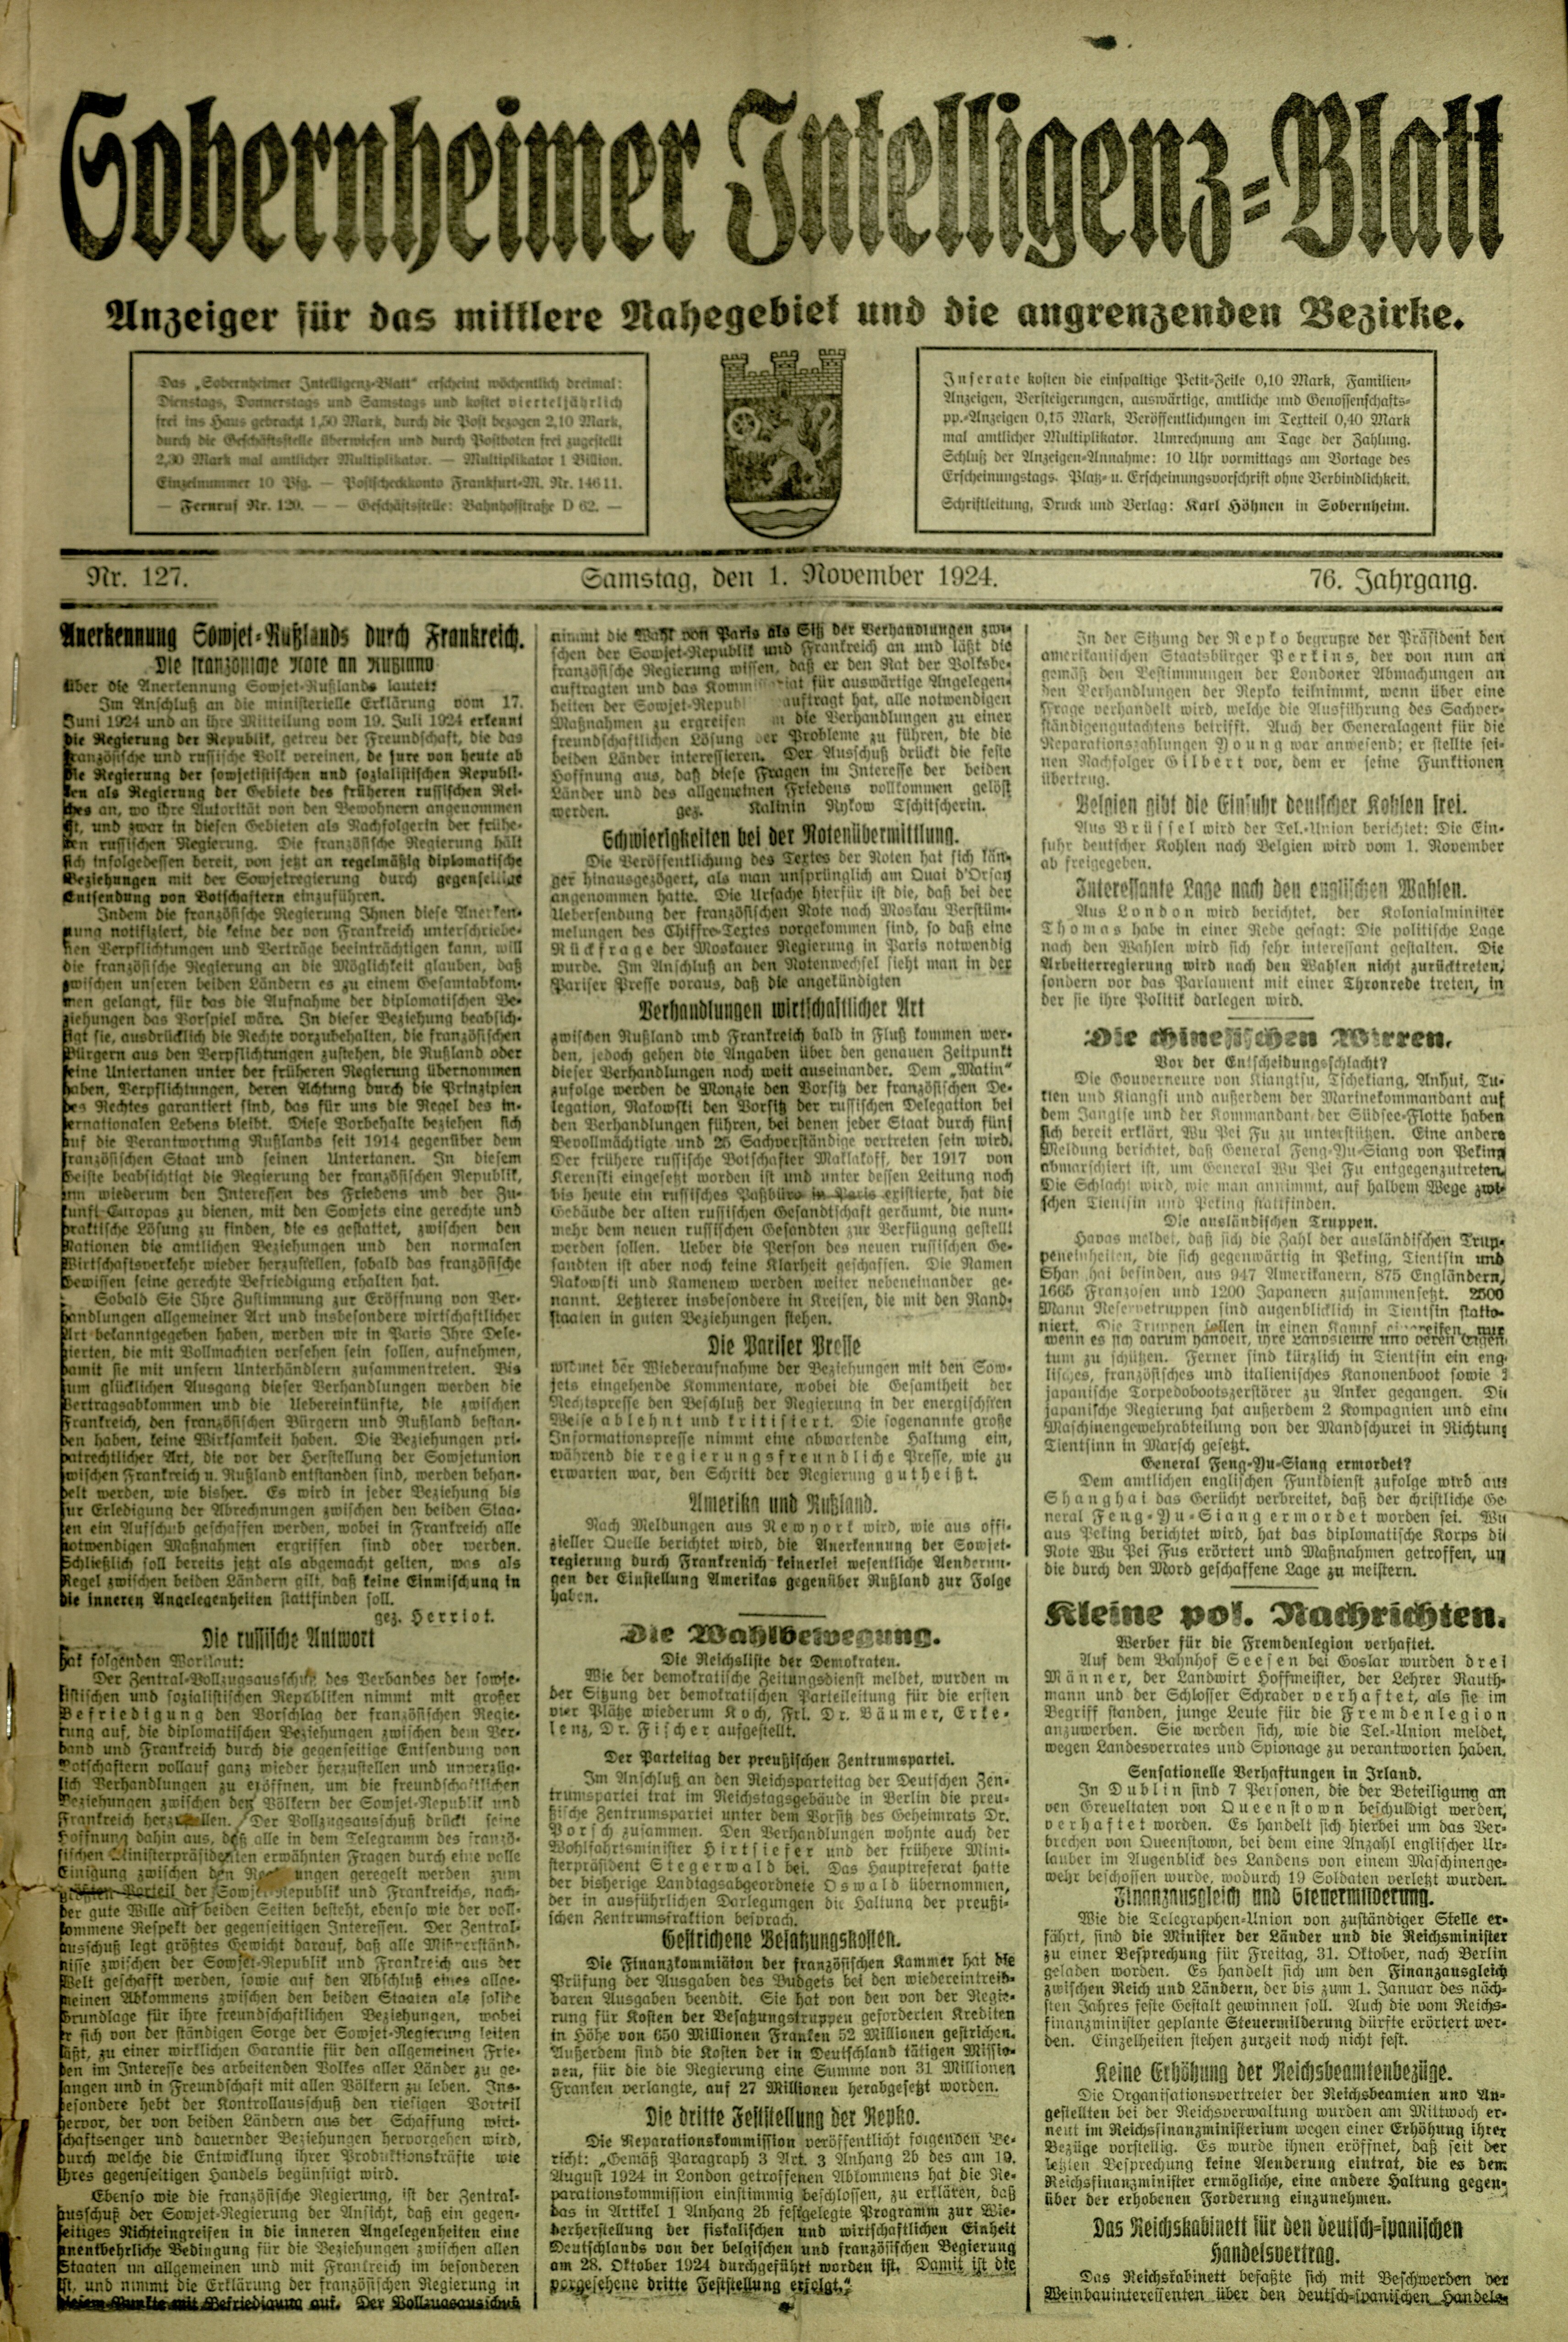 Zeitung: Sobernheimer Intelligenzblatt; November 1924, Jg. 73 Nr. 127 (Heimatmuseum Bad Sobernheim CC BY-NC-SA)